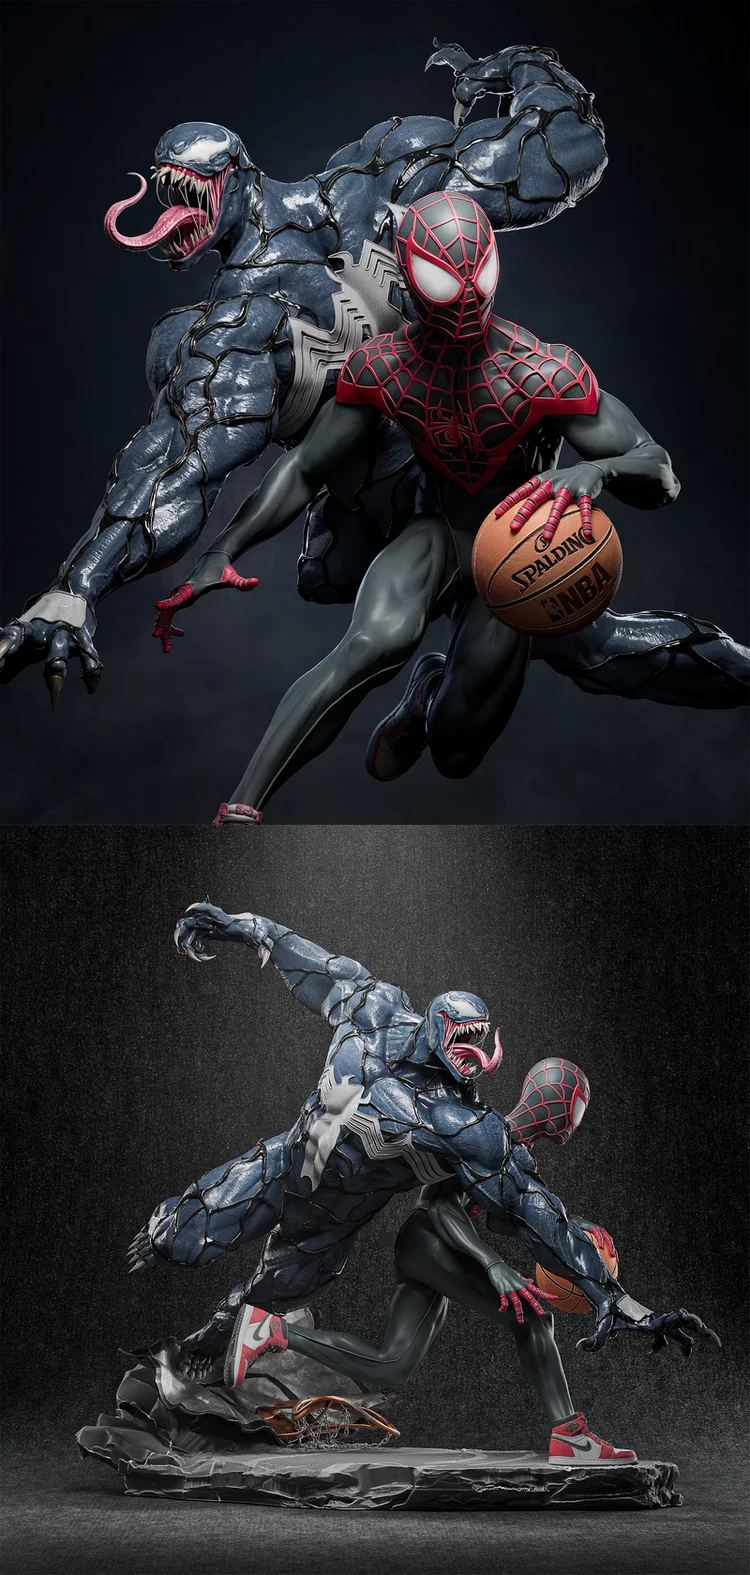 Spiderman versus Venom